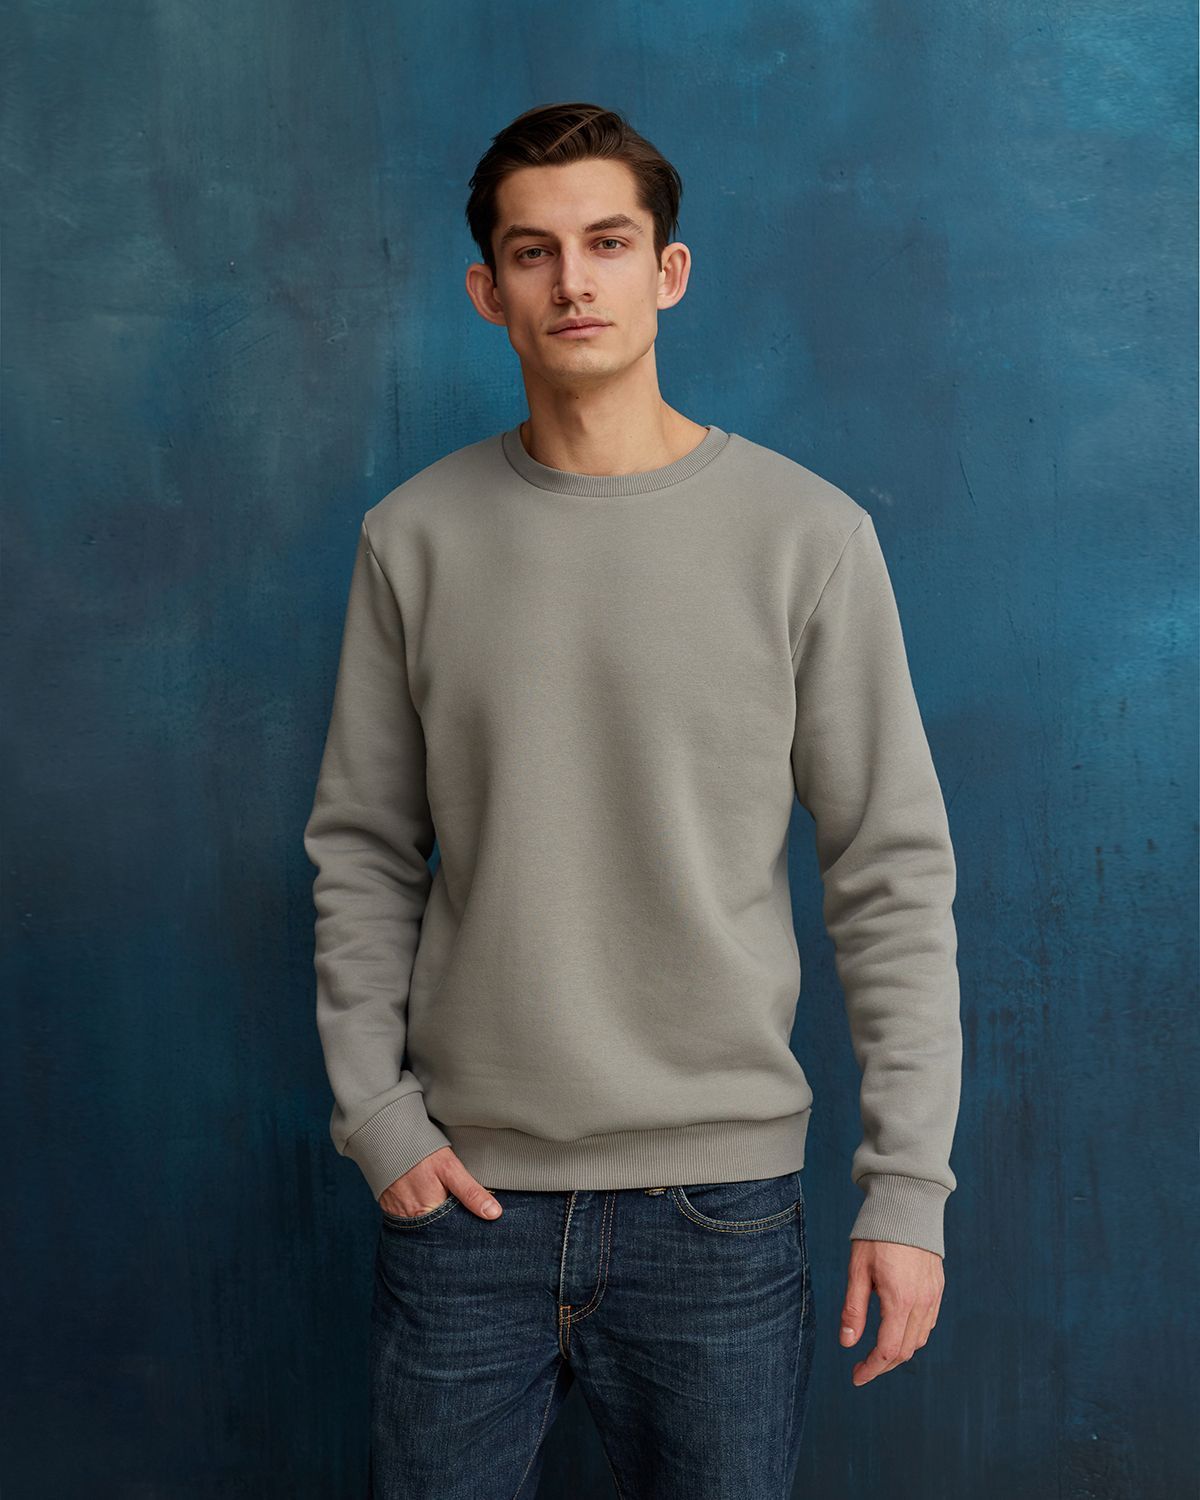 Men’s sweatshirt, pattern  №51